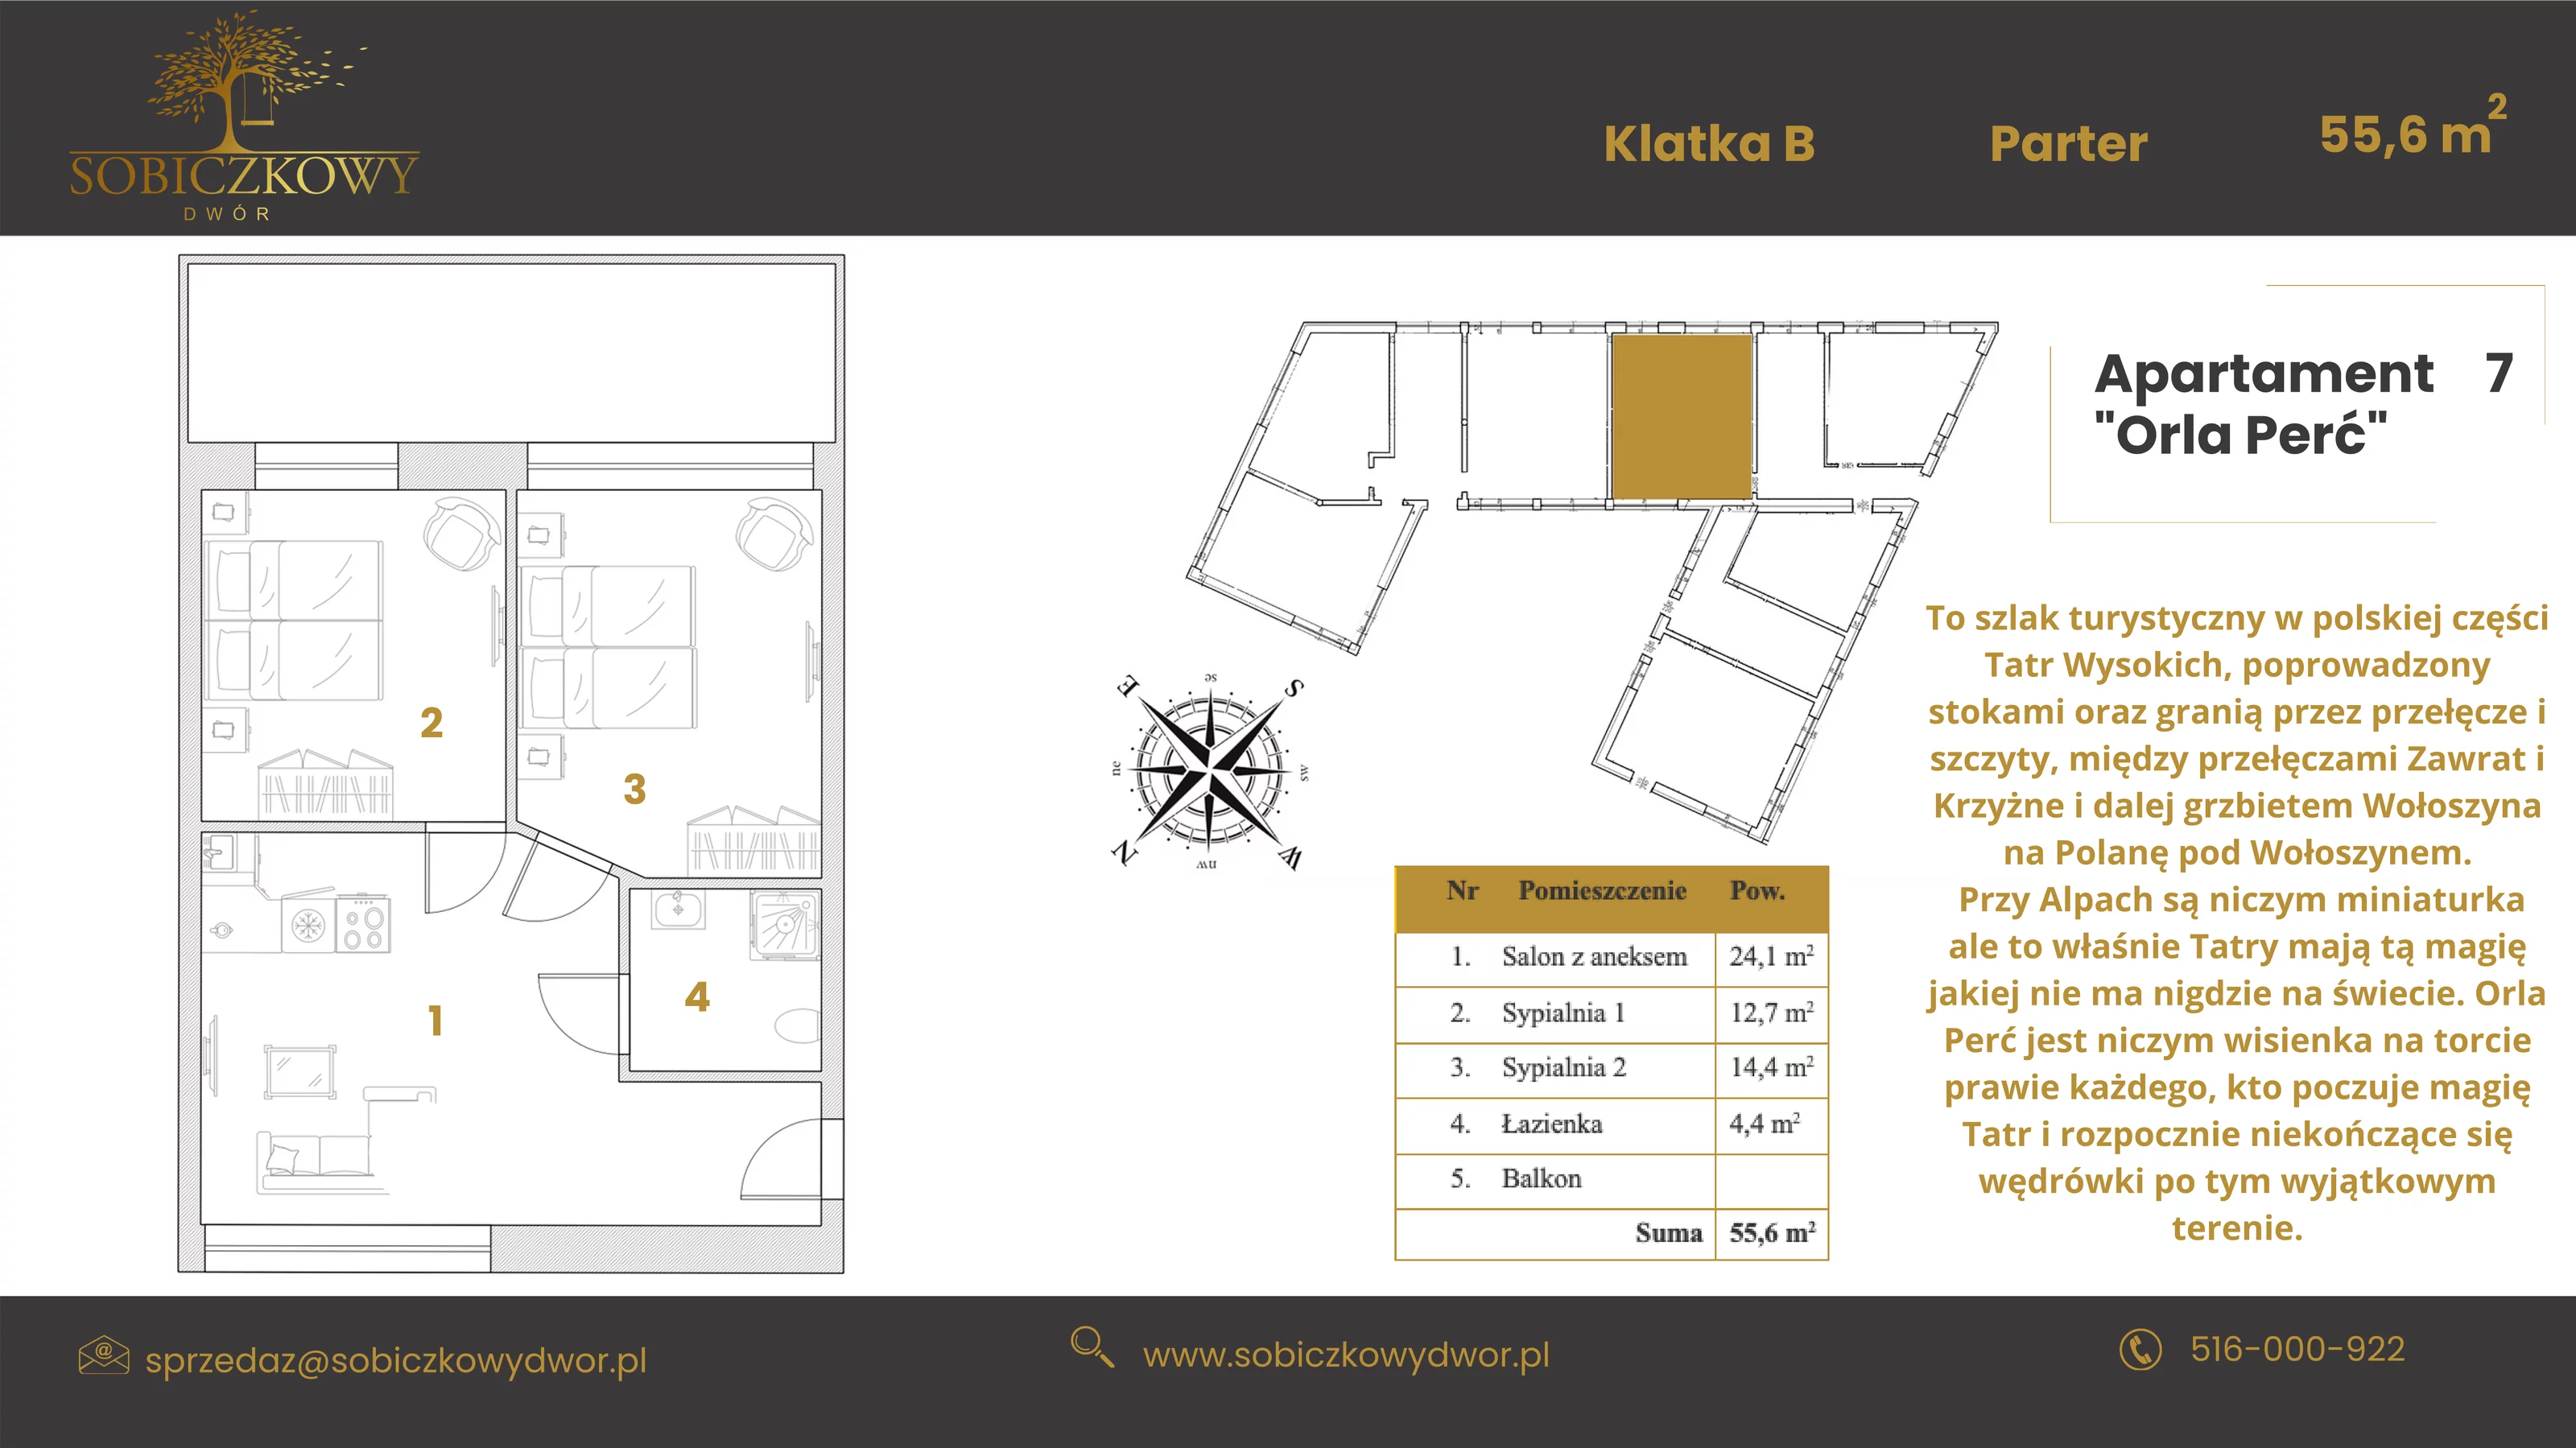 Apartament 55,60 m², parter, oferta nr 7 "Orla Perć", Sobiczkowy Dwór, Kościelisko, ul. Sobiczkowa Bór 1